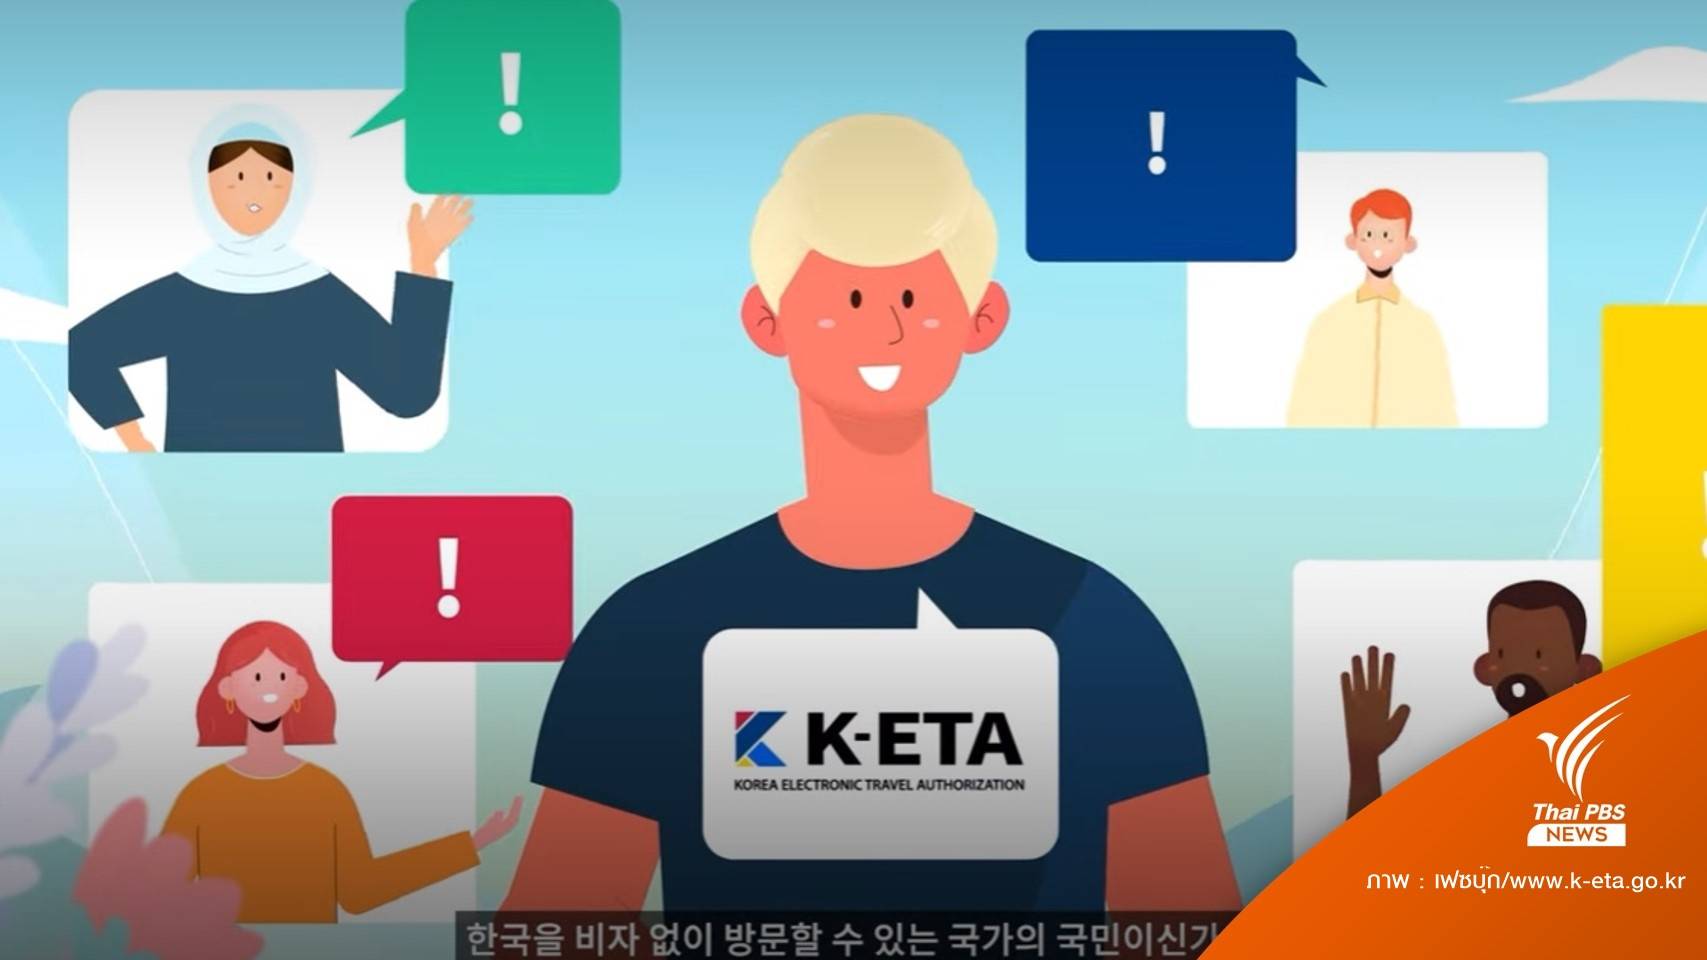 ดีเดย์ 1 ก.ย.นี้ "เกาะเชจู" เริ่มใช้ระบบ K-ETA สกัดแรงงานเถื่อน